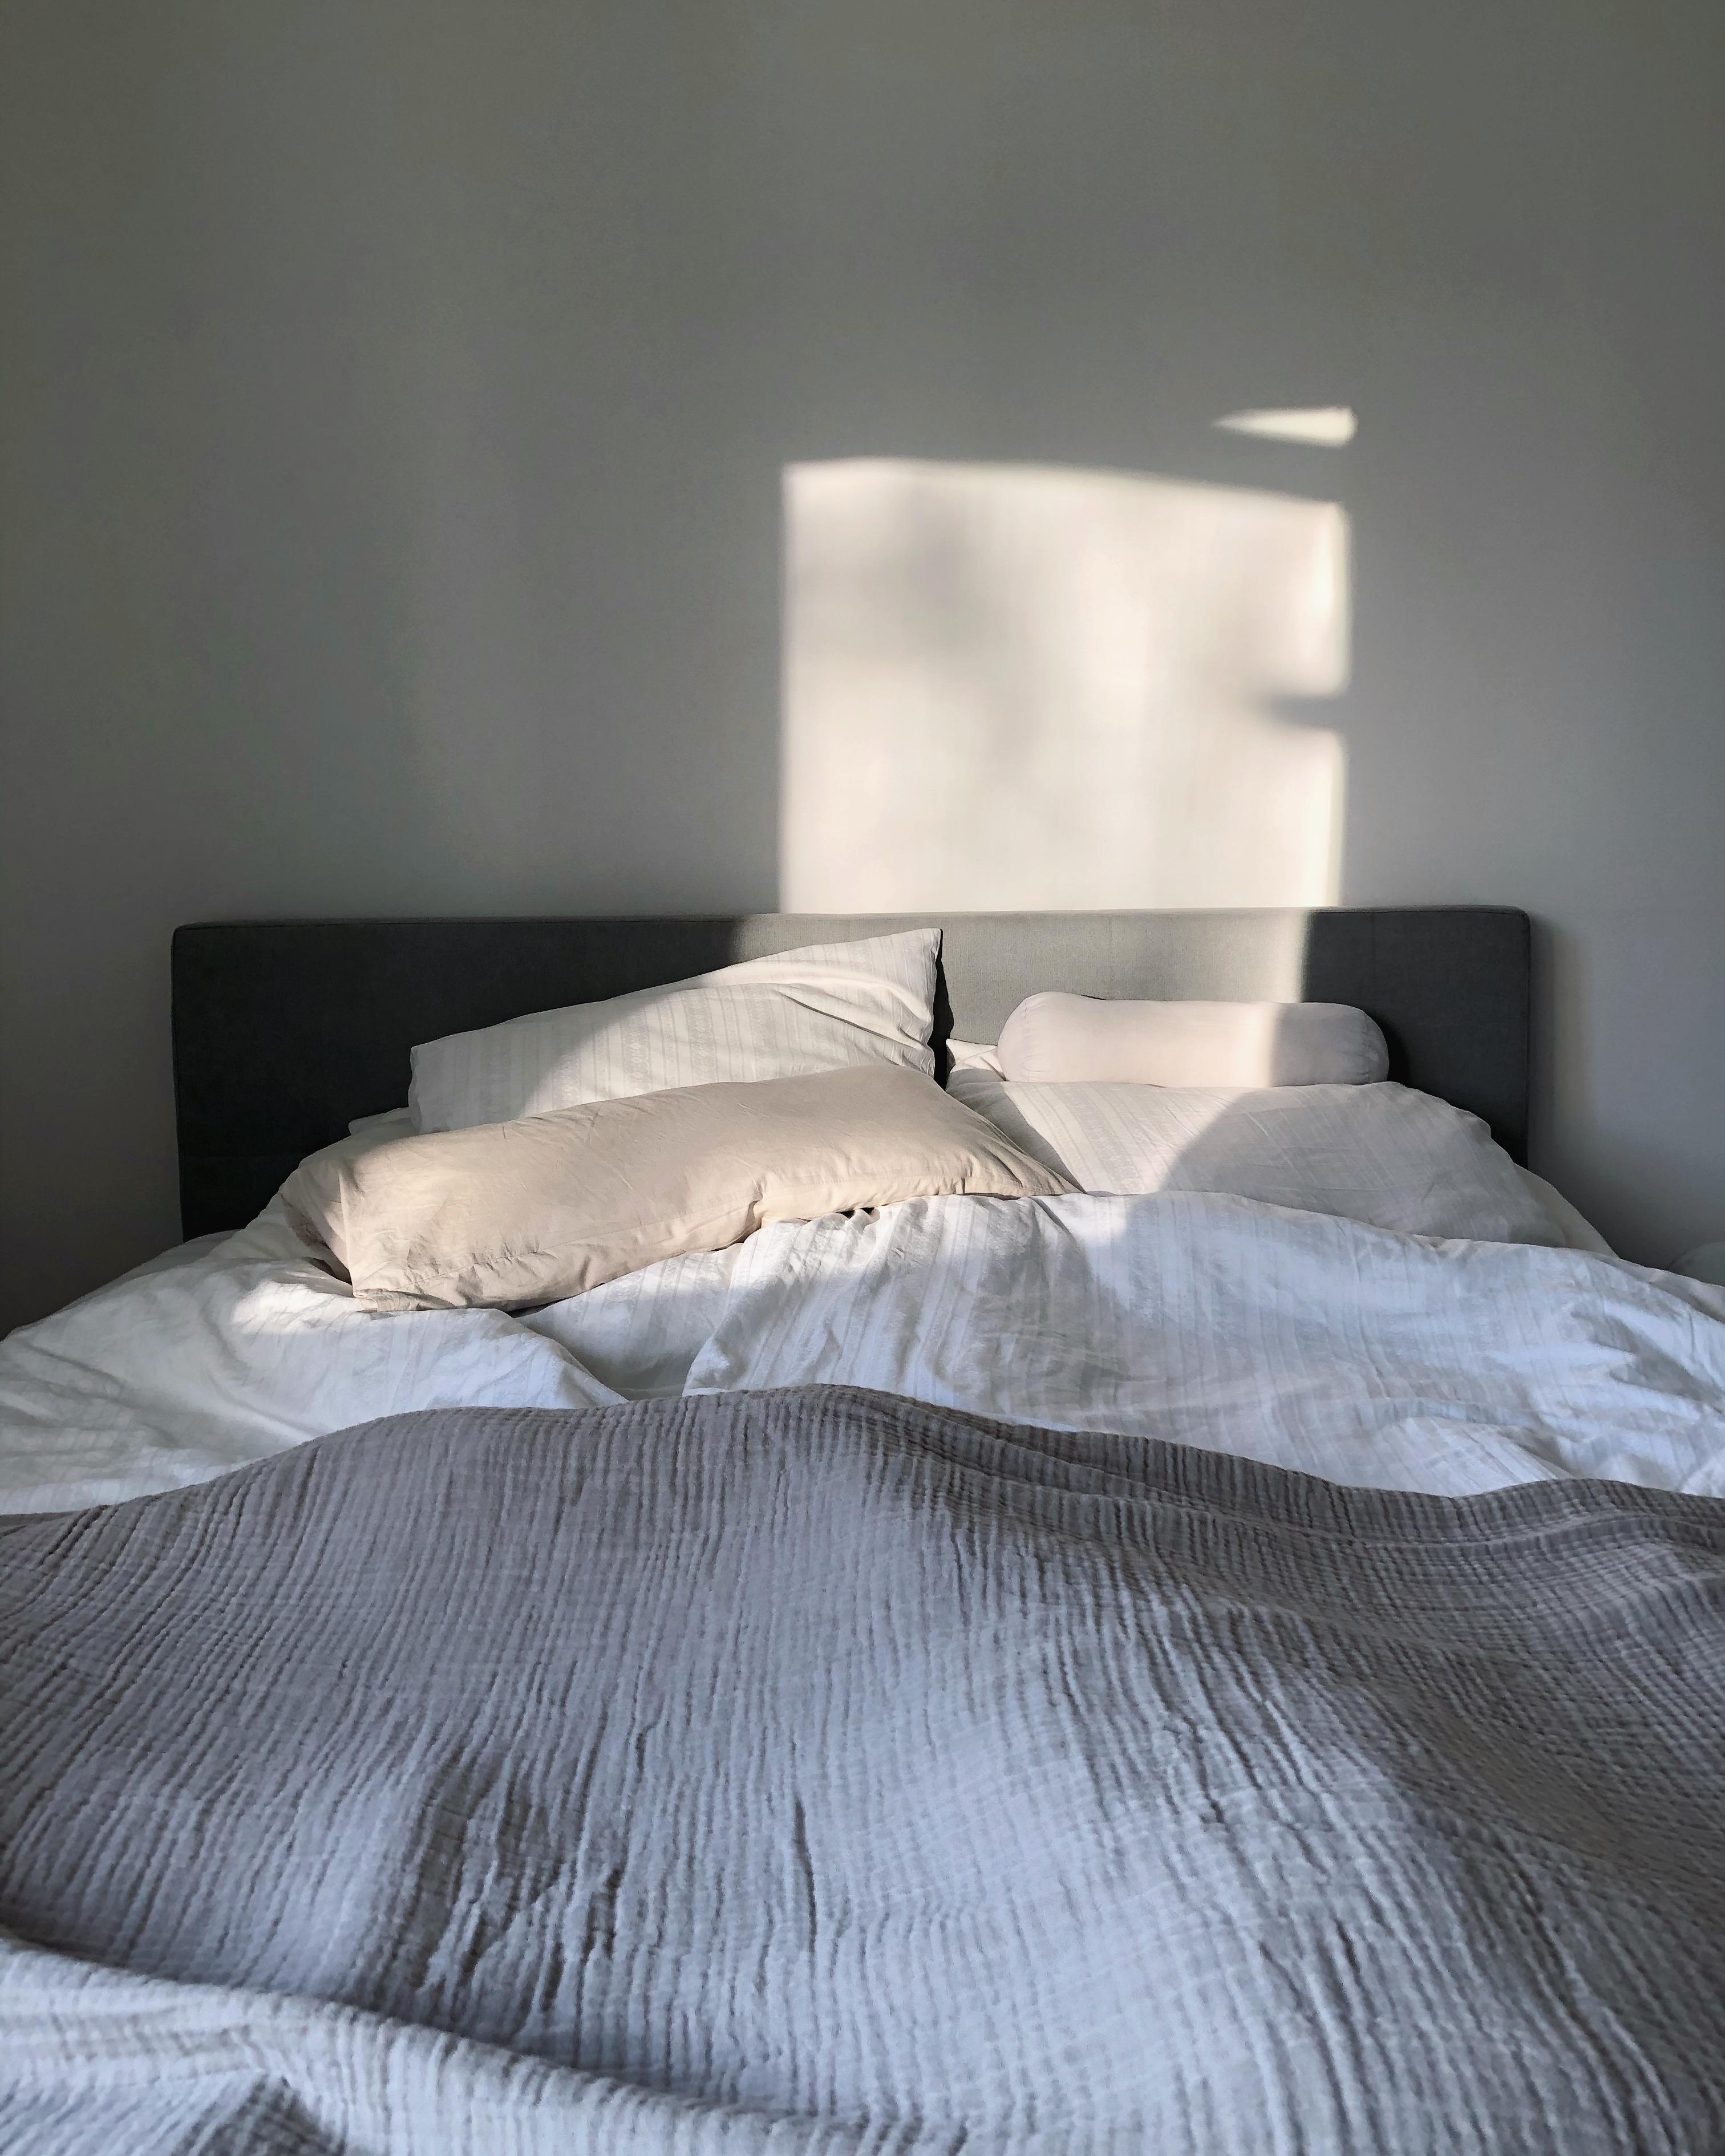 Well #unmade ☀️✨
#bed #bett #bedroom #schlafzimmer #morninglight #cozy #interior